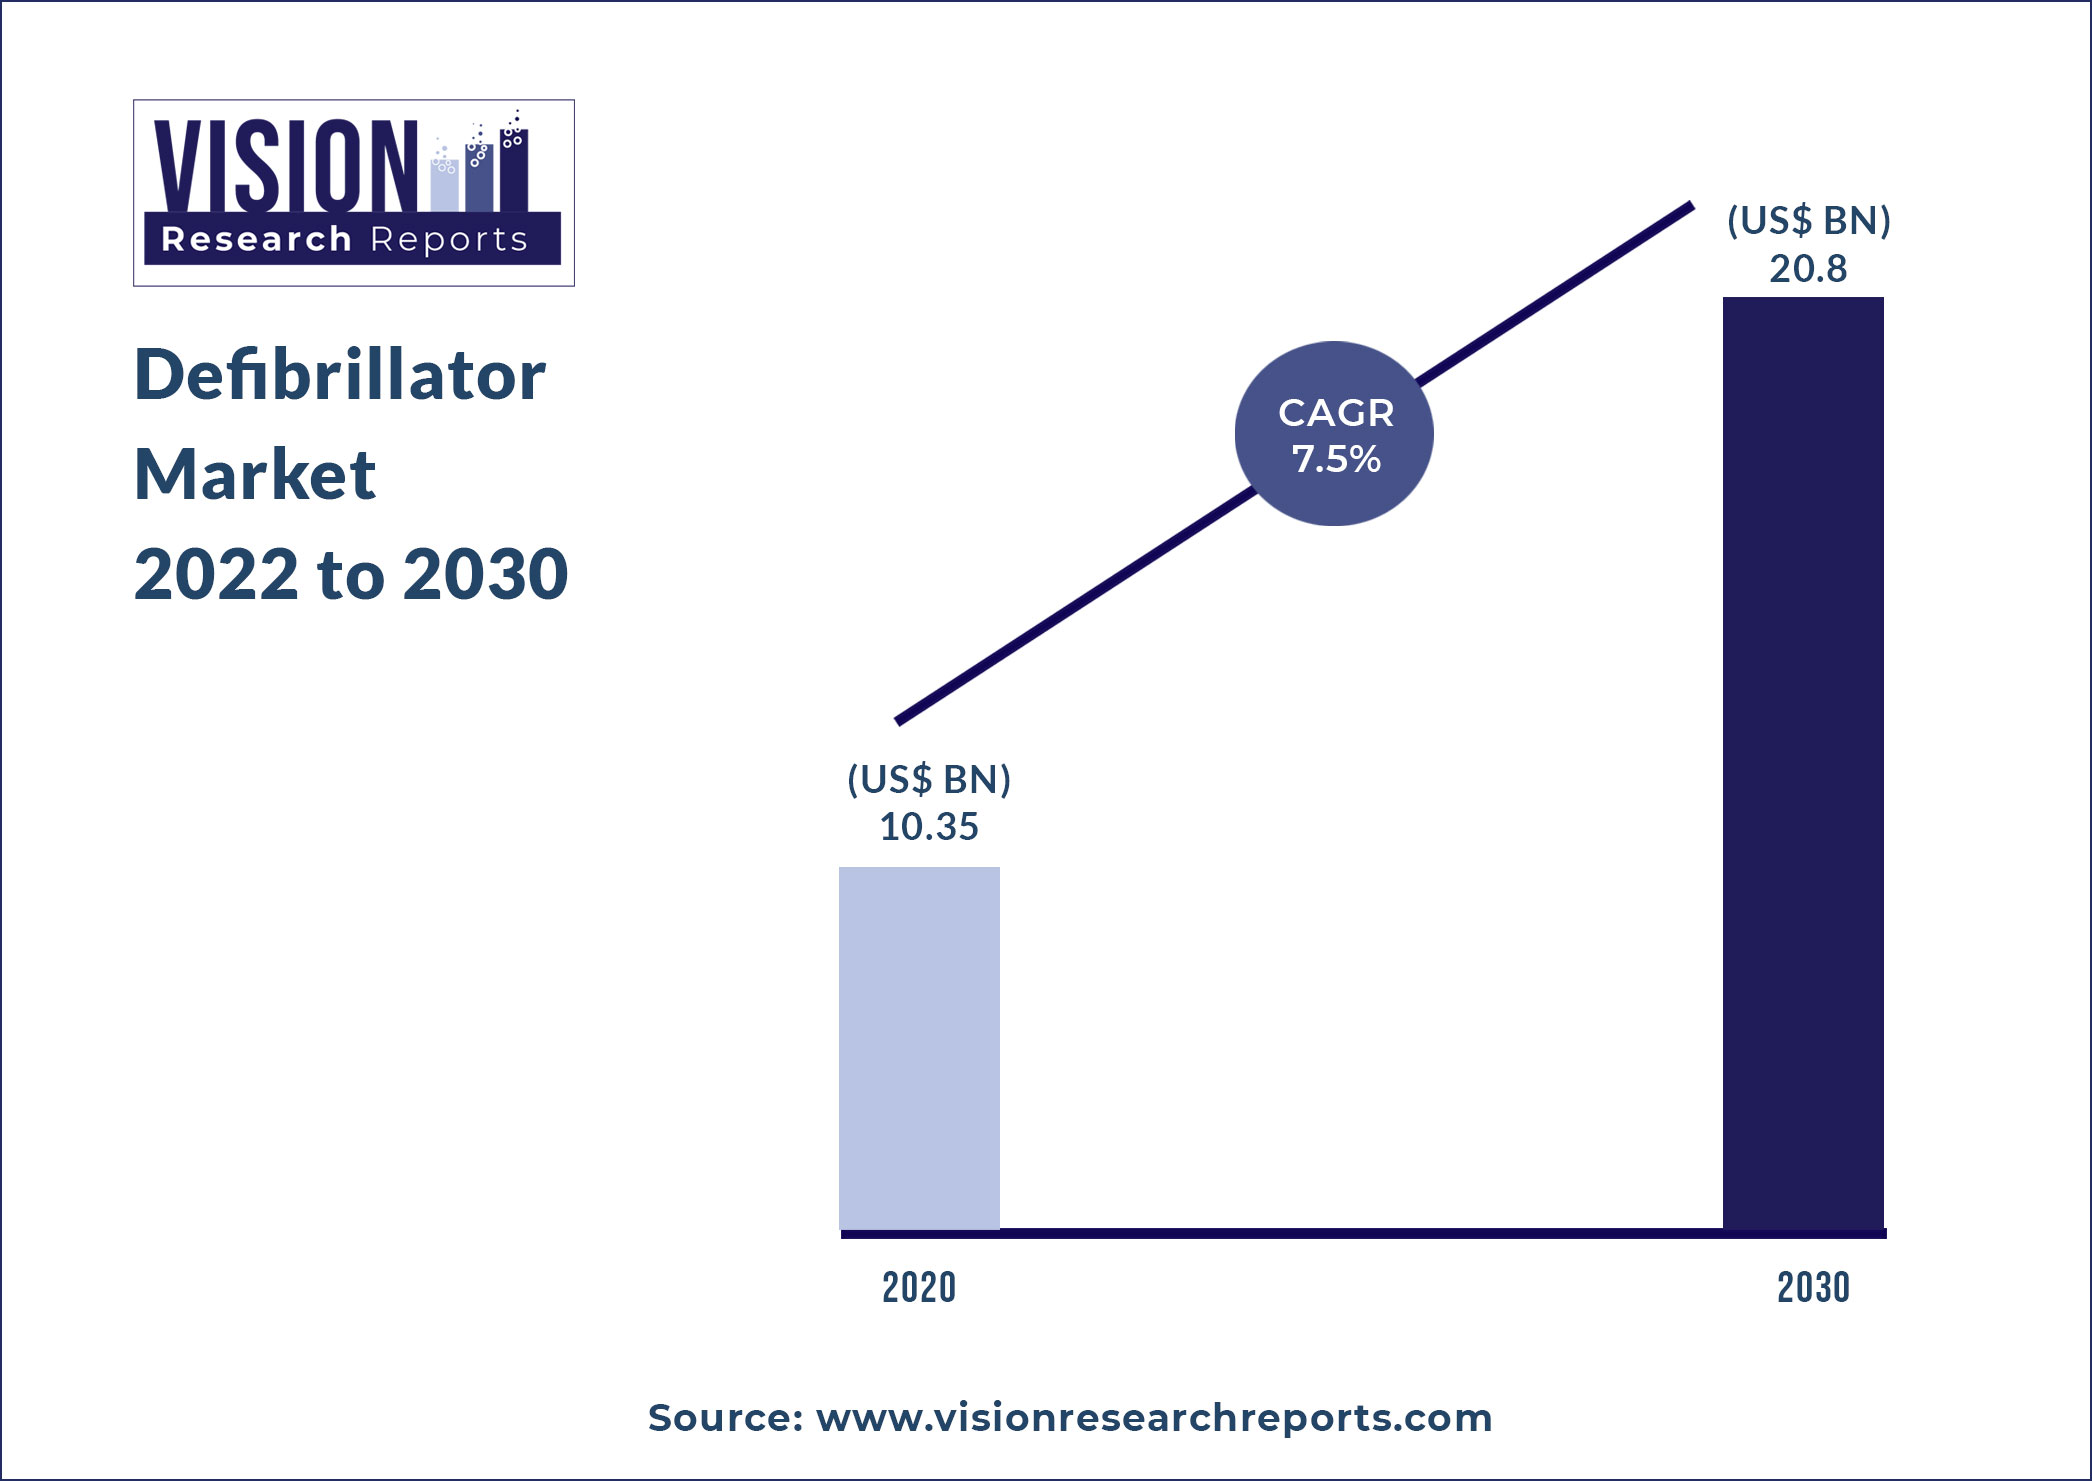 Defibrillator Market Size 2022 to 2030